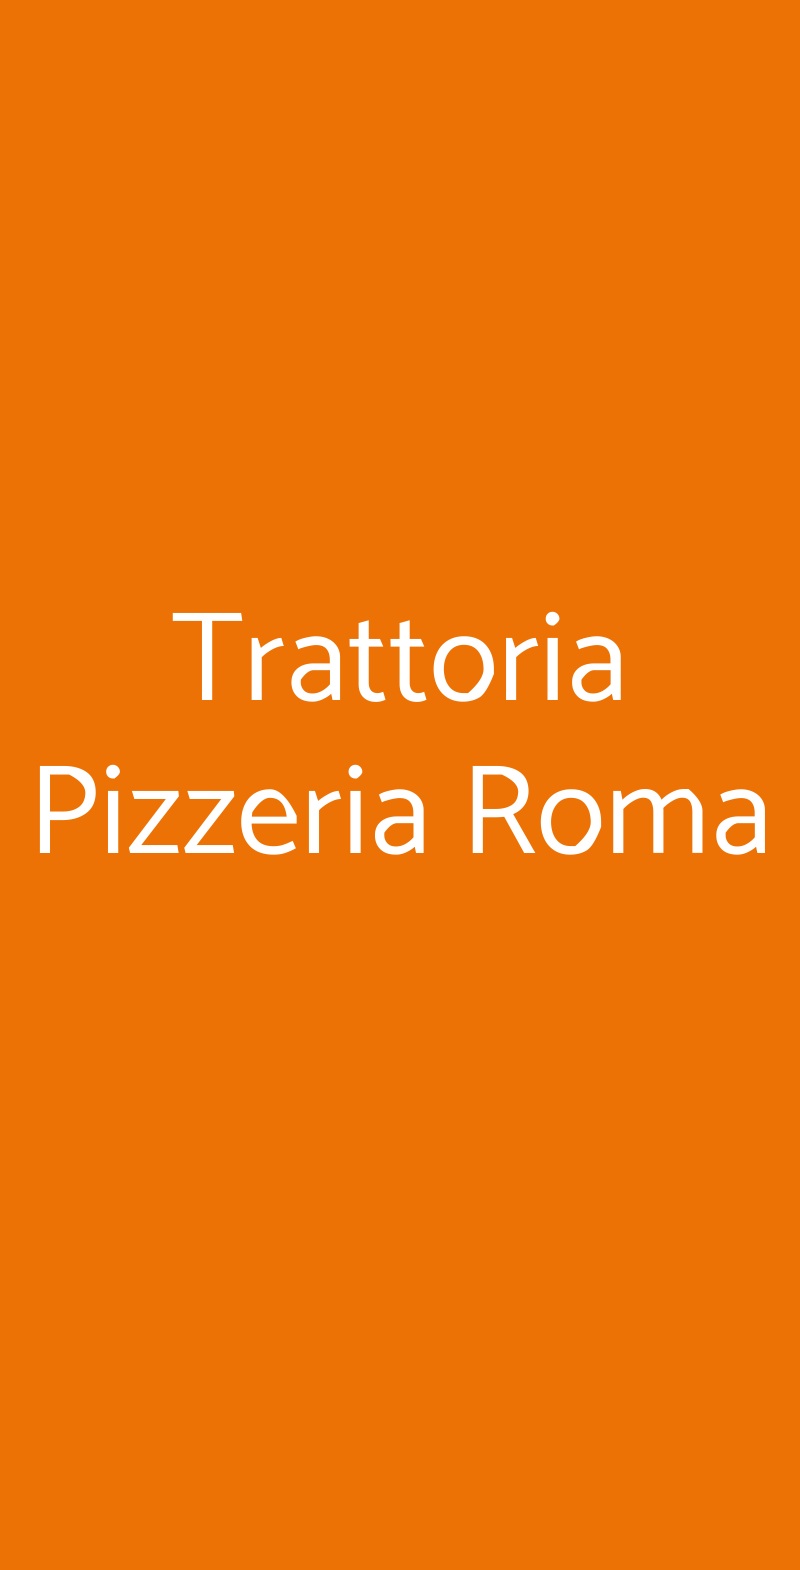 Trattoria Pizzeria Roma Forli menù 1 pagina